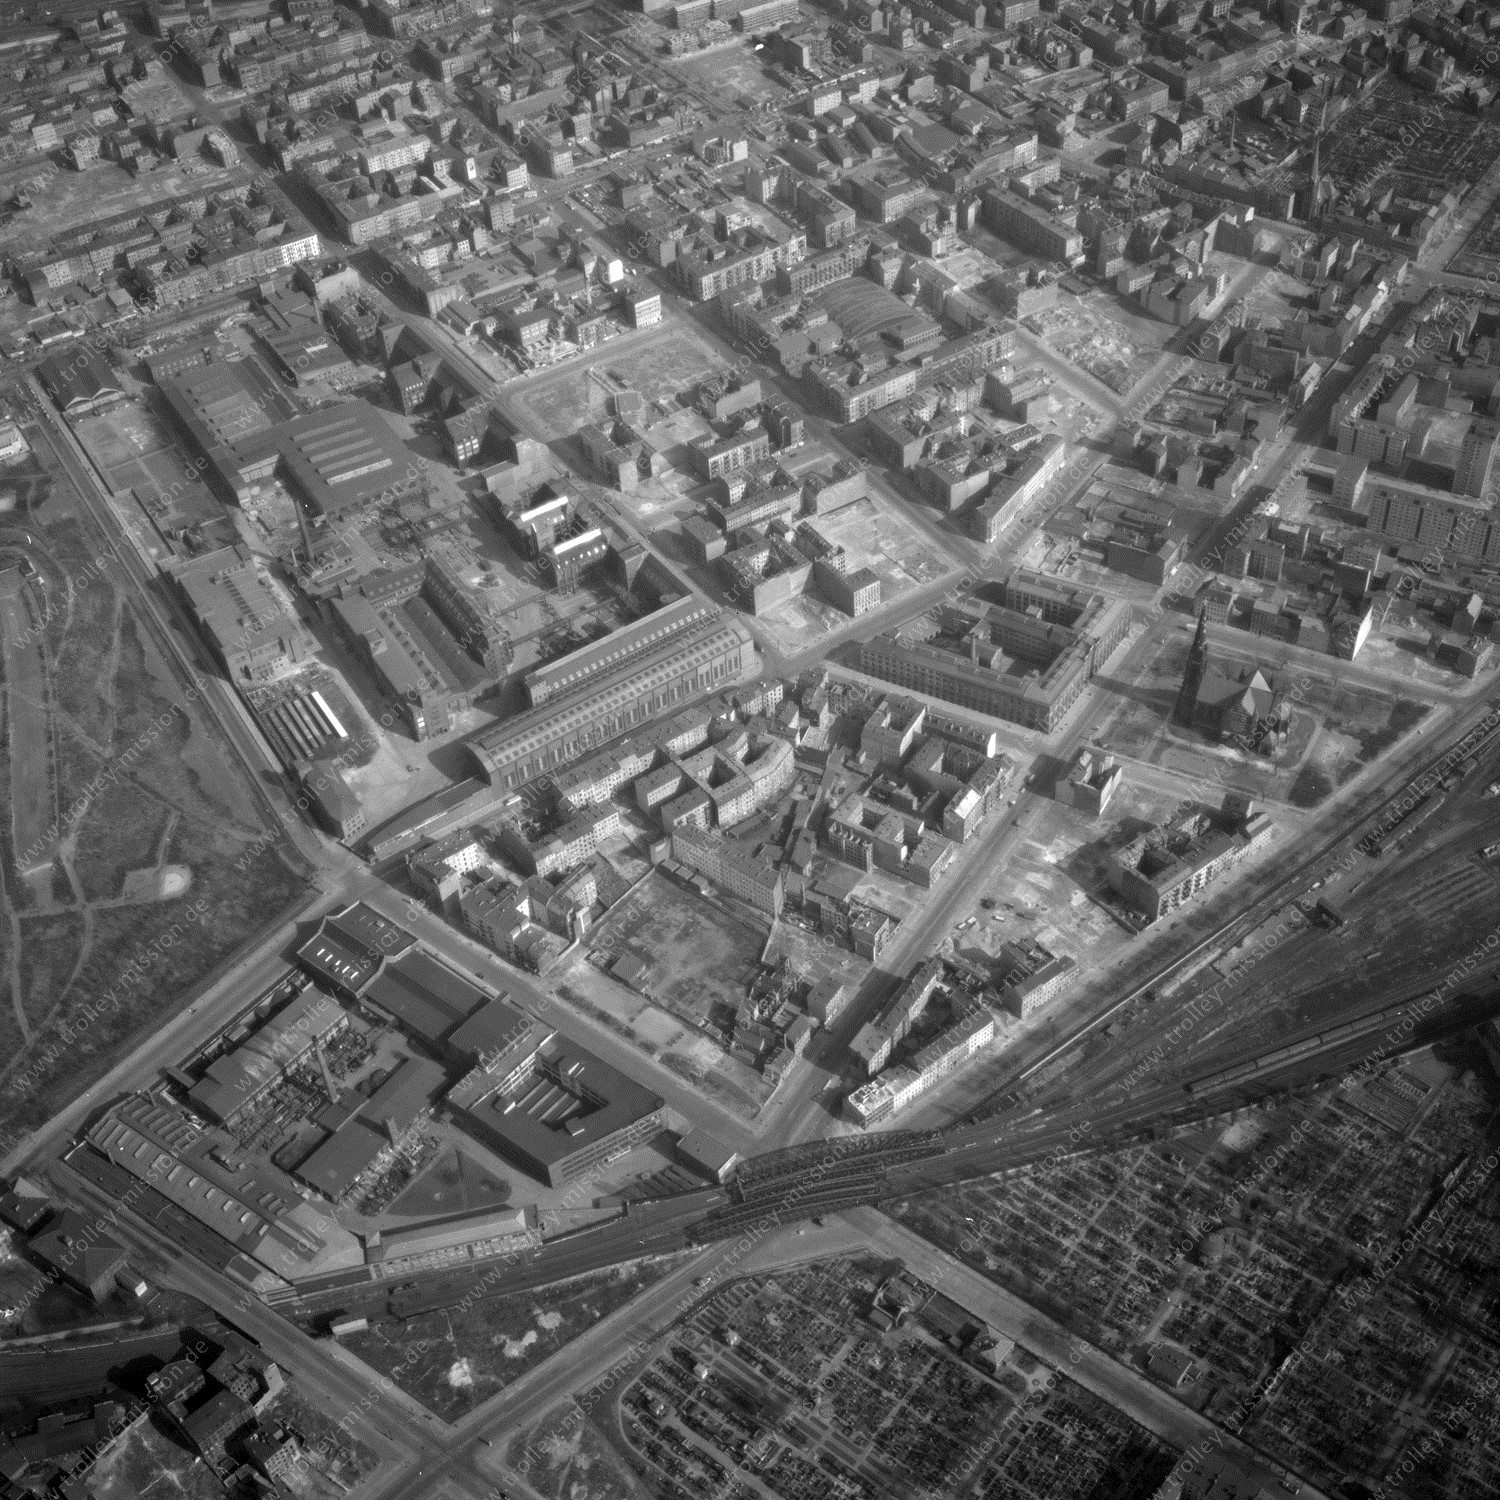 Alte Fotos und Luftbilder von Berlin - Luftbildaufnahme Nr. 05 - Historische Luftaufnahmen von West-Berlin aus dem Jahr 1954 - Flugstrecke Romeo